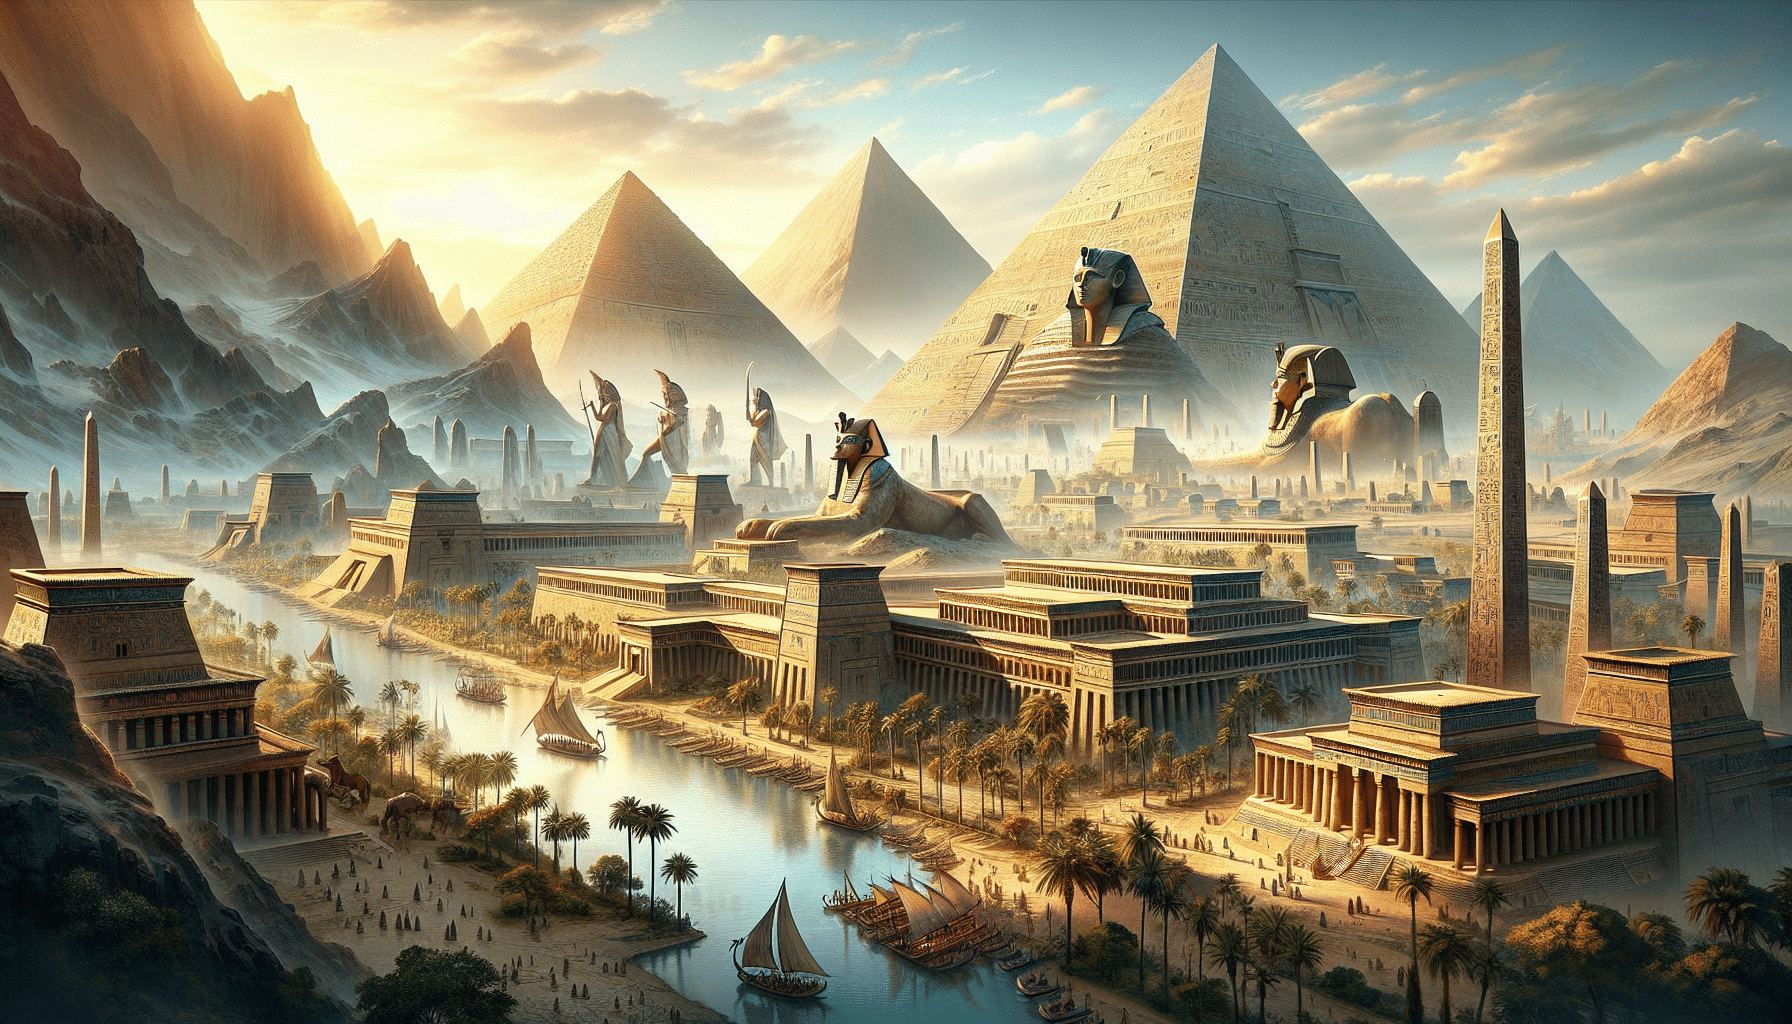 découvrez total war pharaoh et sa mise à jour colossale, enrichie de nombreux contenus gratuits pour une expérience épique !